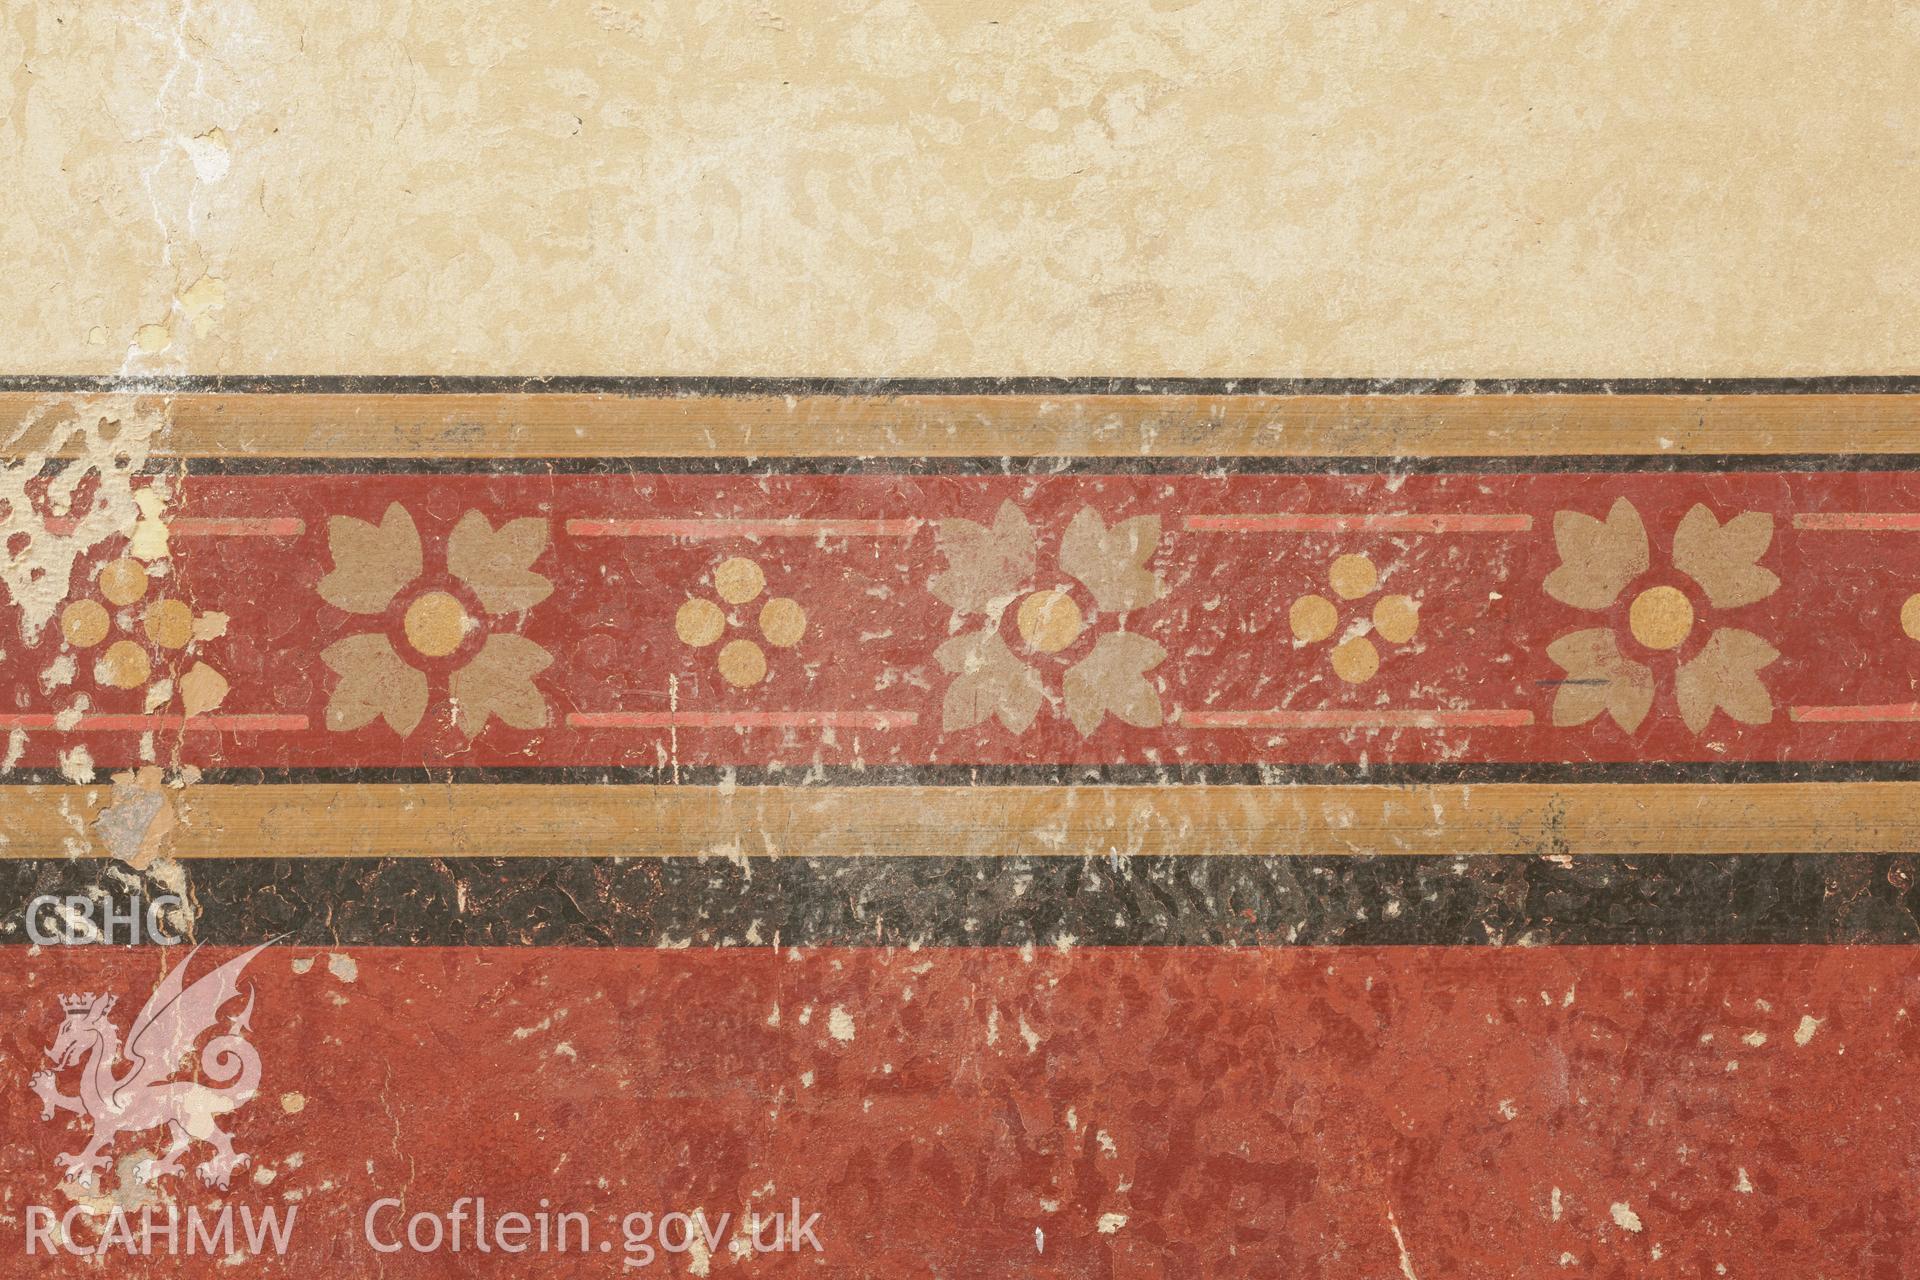 Detail of pattern